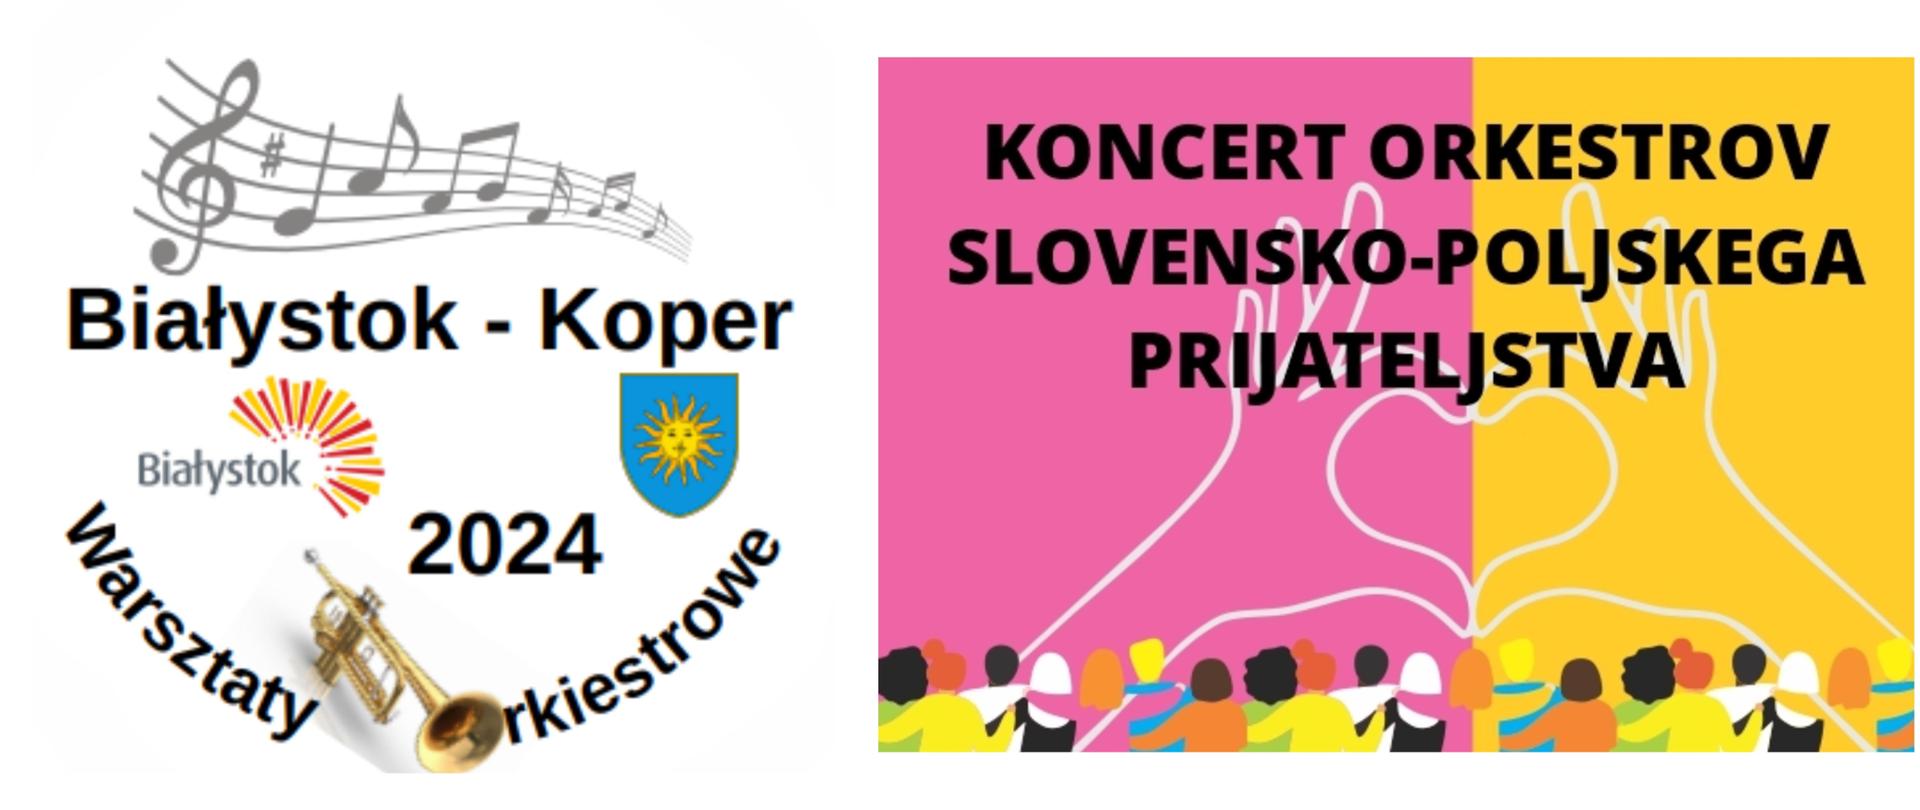 baner informujący o warsztatach orkiestrowych w Koper, na banerze logo Białegostoku, symbol Koper oraz informacja o koncercie słoweńsko-polskich orkiestr młodzieżowych